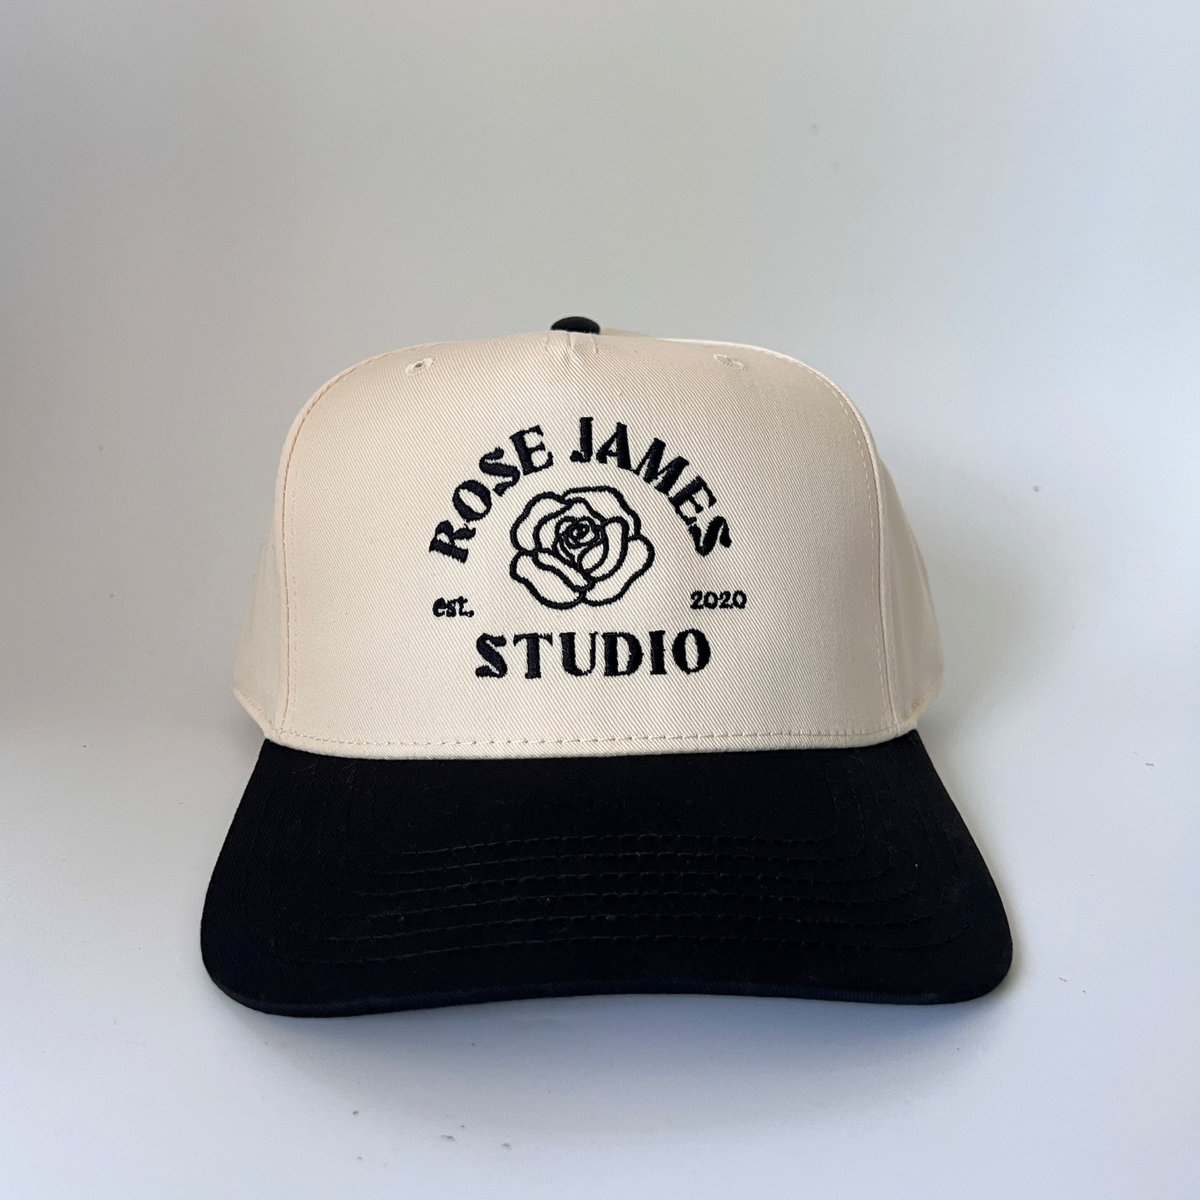 The Studio Hat